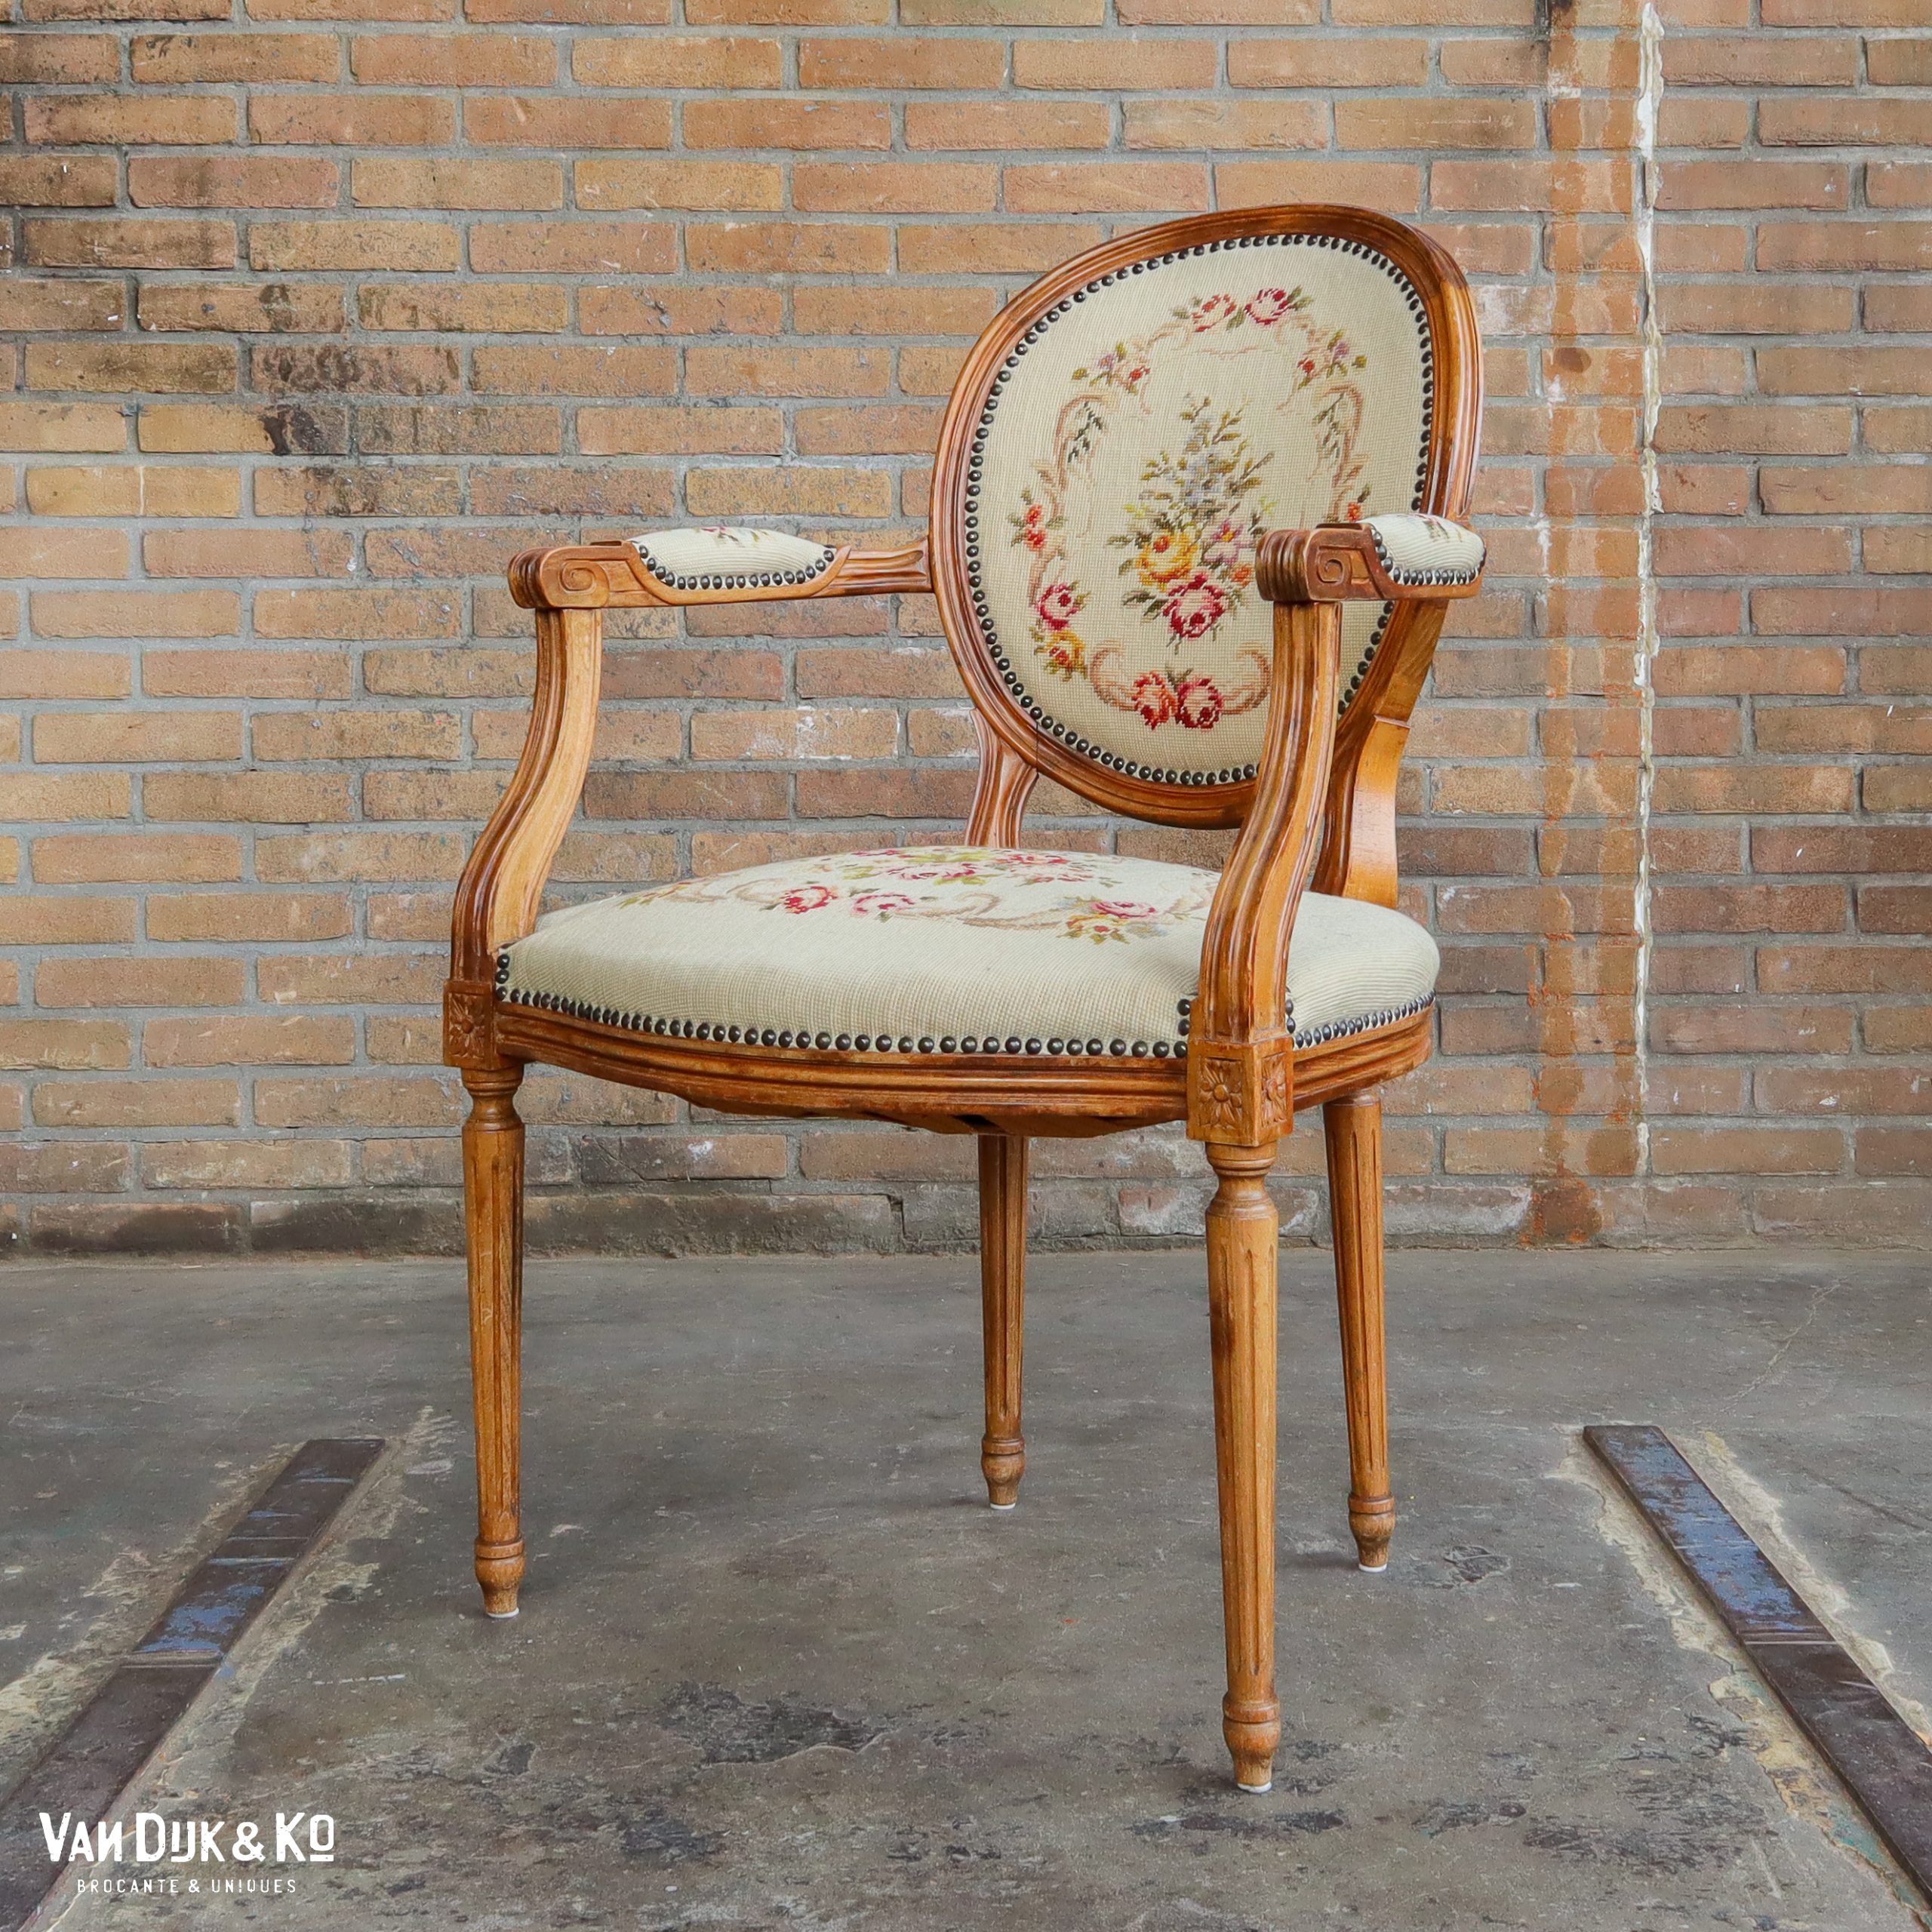 eigendom Kom langs om het te weten Worden Vintage Louis XV stoel » Van Dijk & Ko